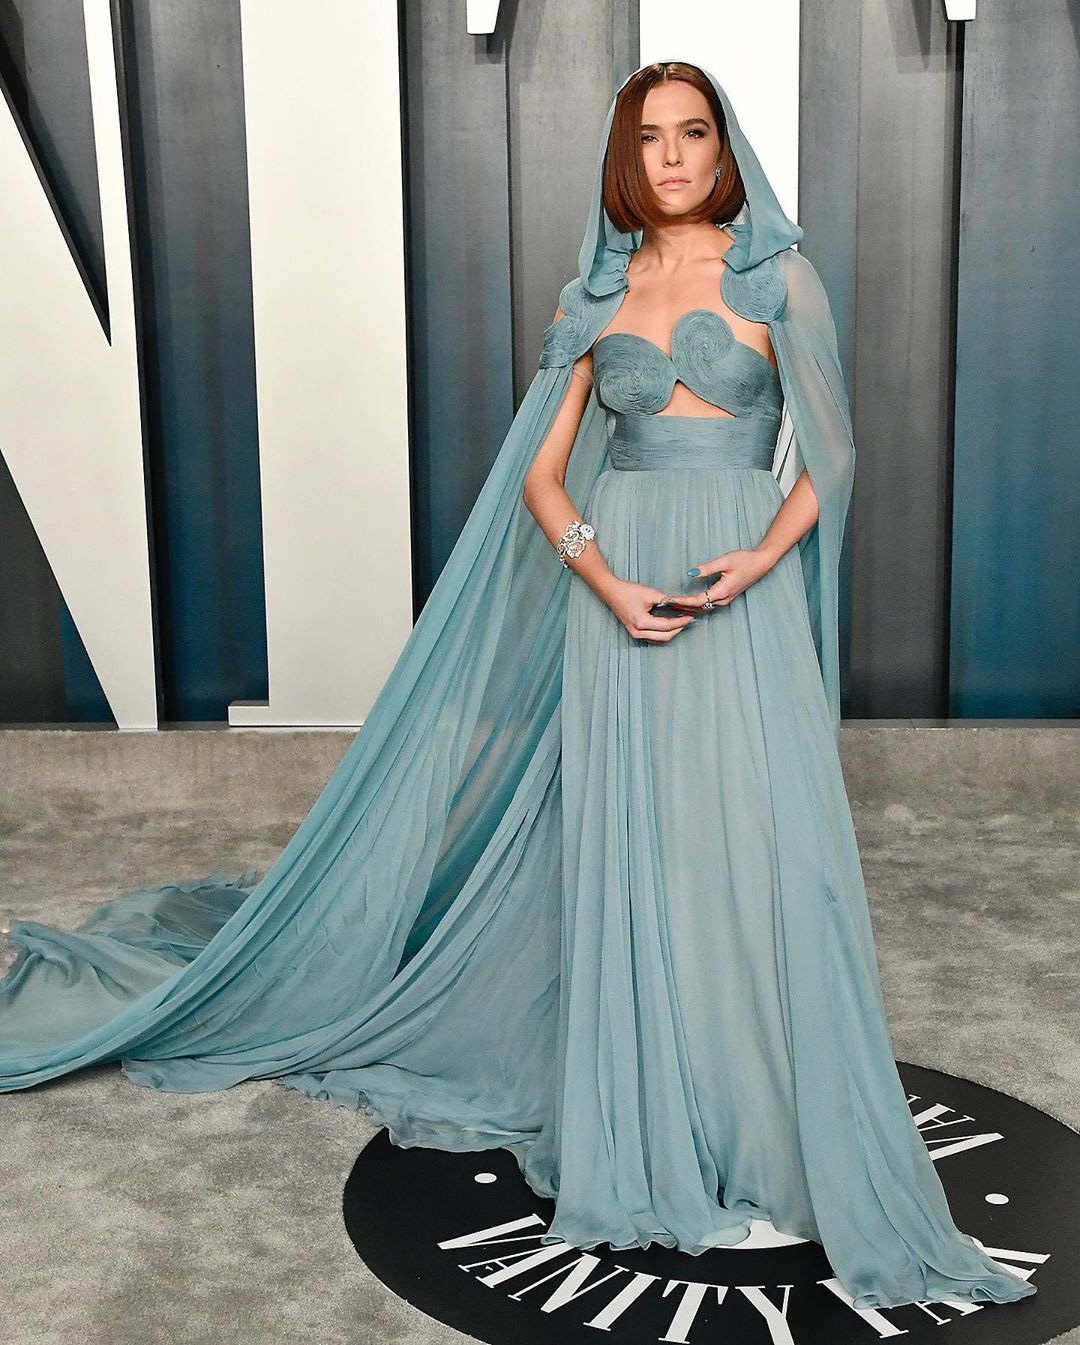 Tiệc hậu Oscar: Các sao lên đồ xuất sắc hơn hẳn sự kiện chính, hot nhất là Kylie Jenner với bộ váy bó đến độ... không ngồi được - Ảnh 15.